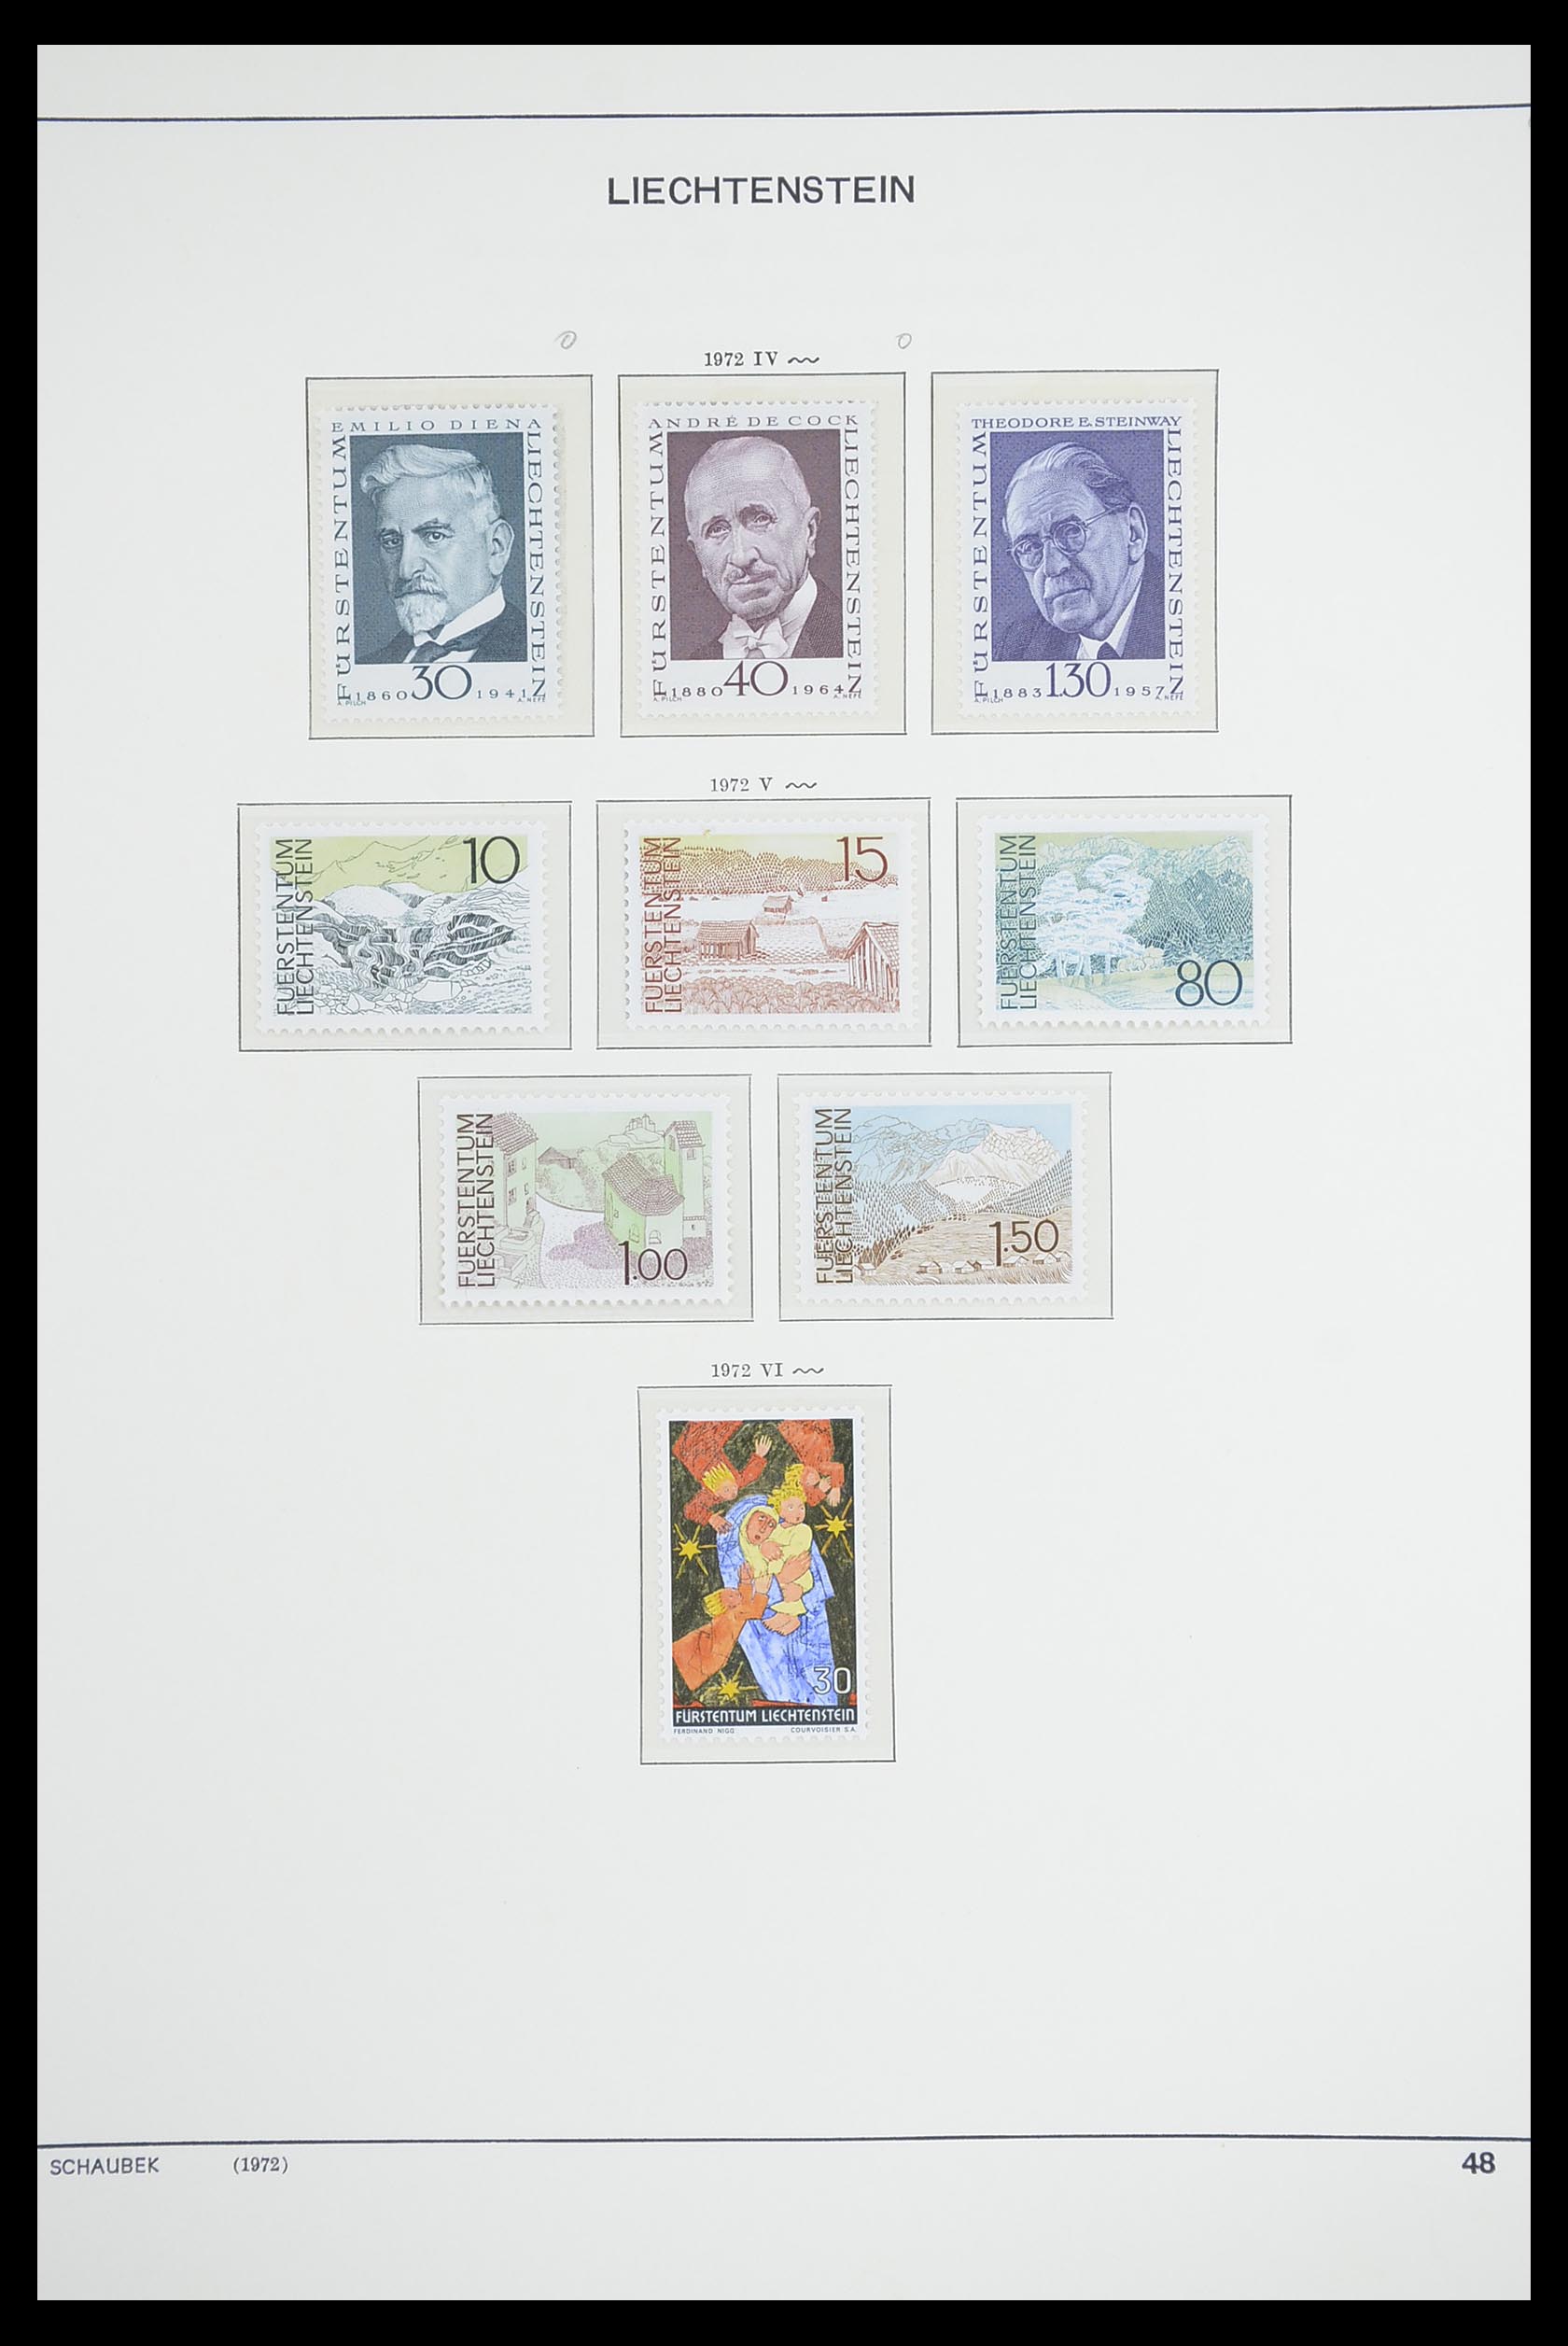 33274 056 - Stamp collection 33274 Liechtenstein 1912-1996.